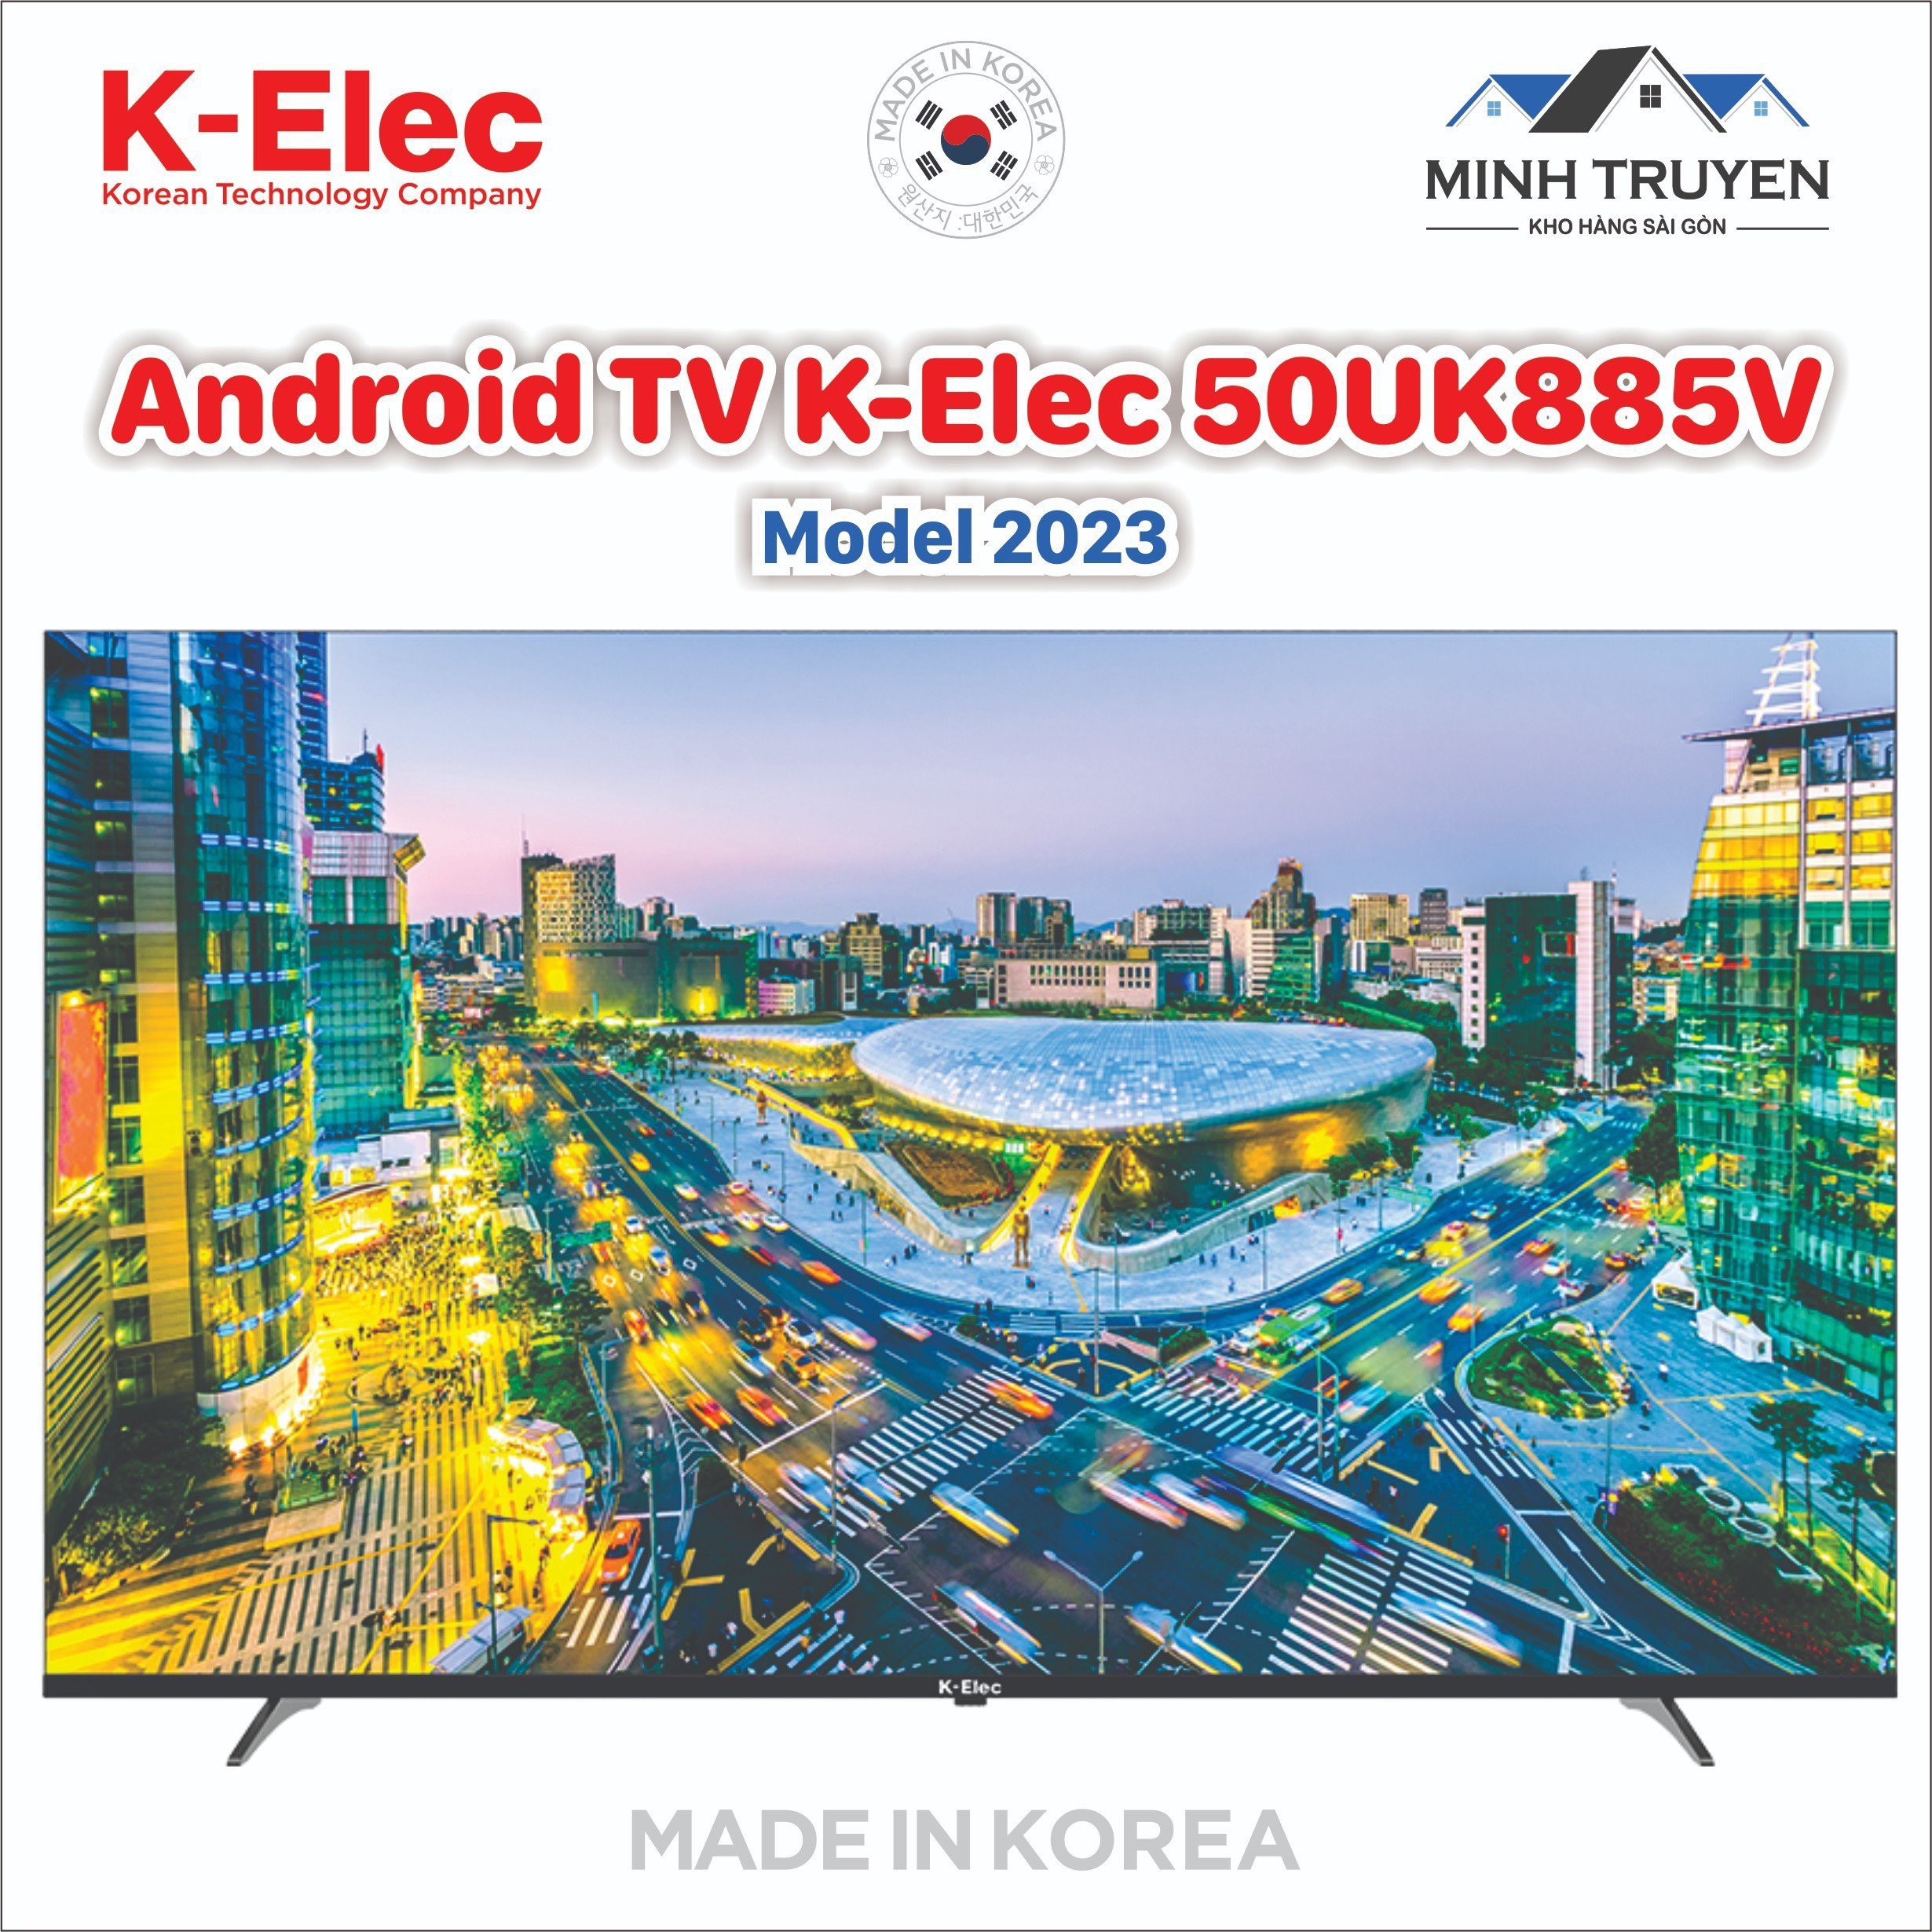 Android Tivi K-Elec 4K 50 inch 50UK885V (Mới 2023) - Thương hiệu Hàn Quốc - CHÍNH HÃNG 100%